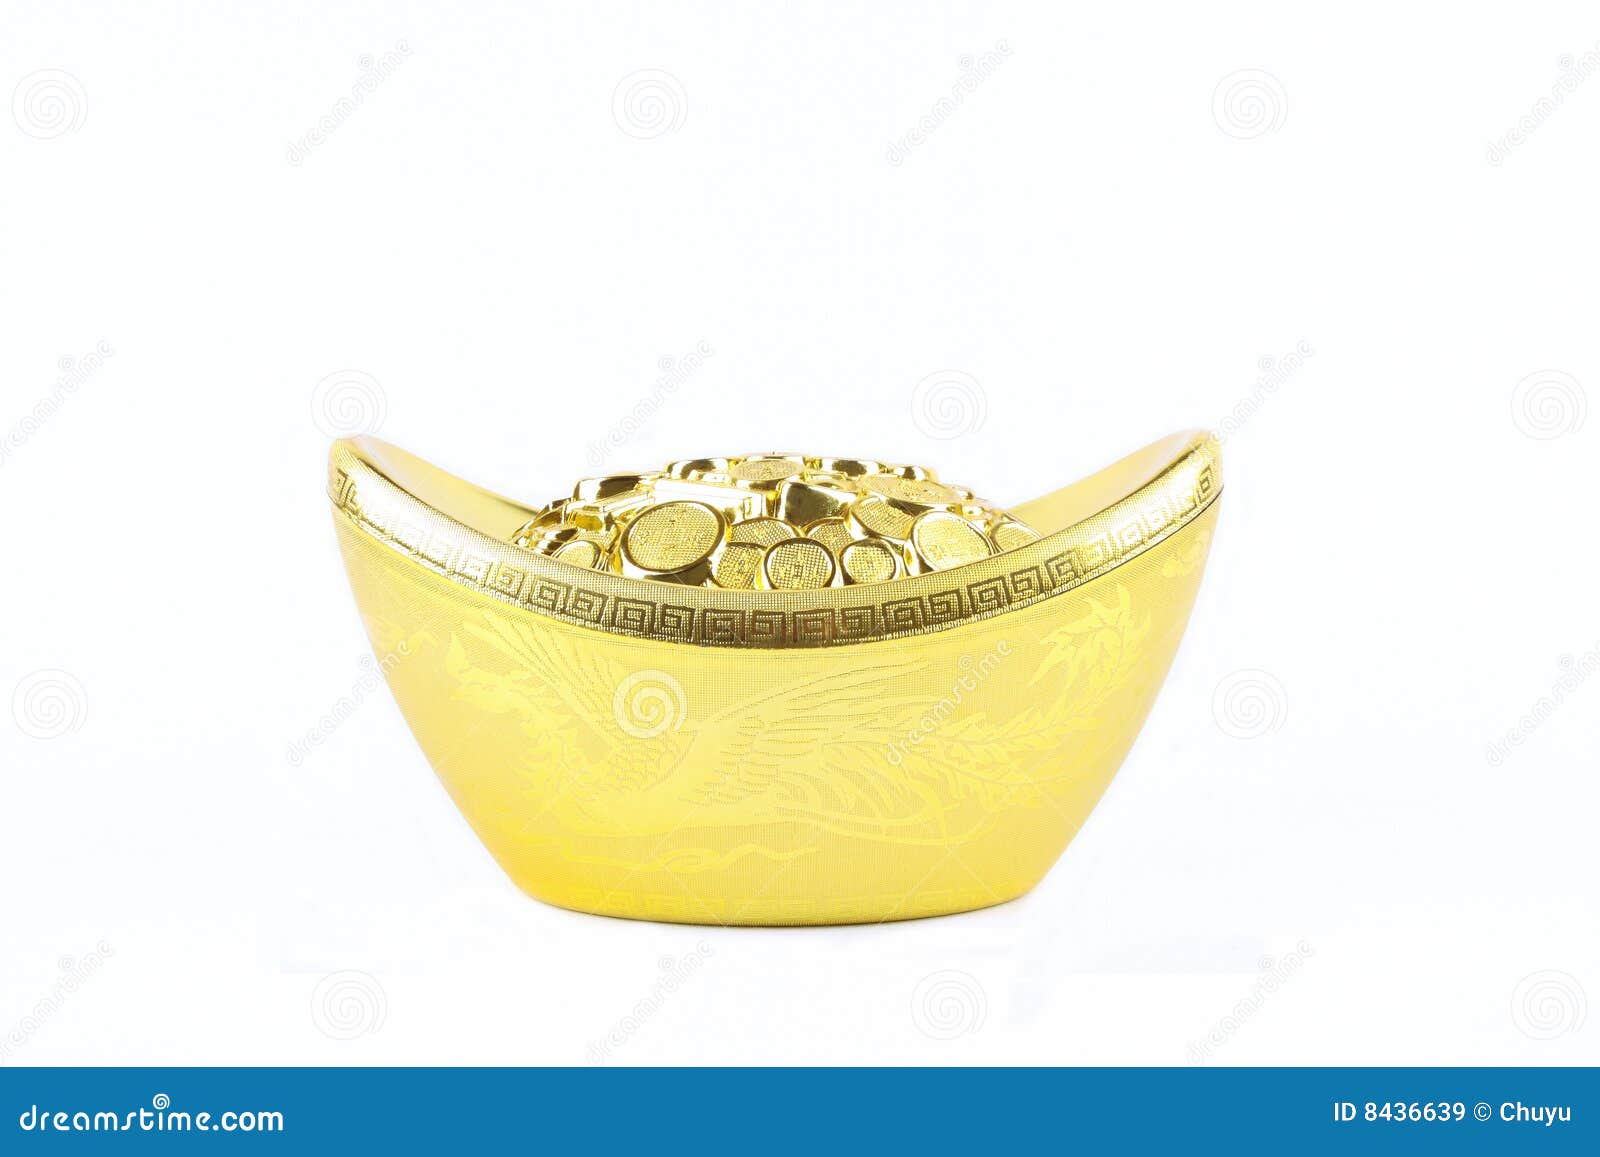 Chinese gold ingot stock image. Image of auspicious, golden - 8436639